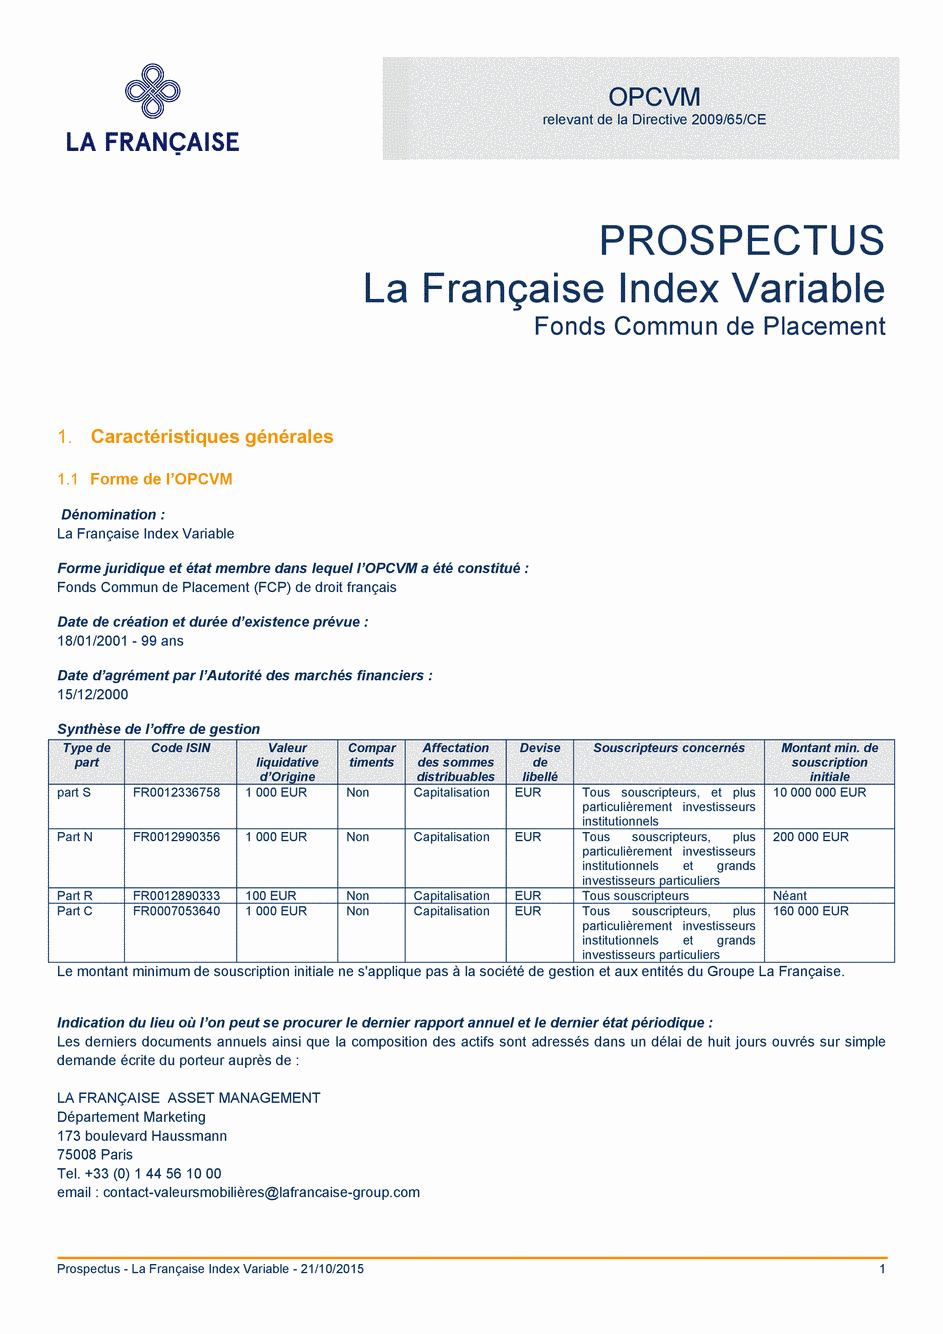 Prospectus La Française Moderate Multibonds - Part C - 21/10/2015 - Français